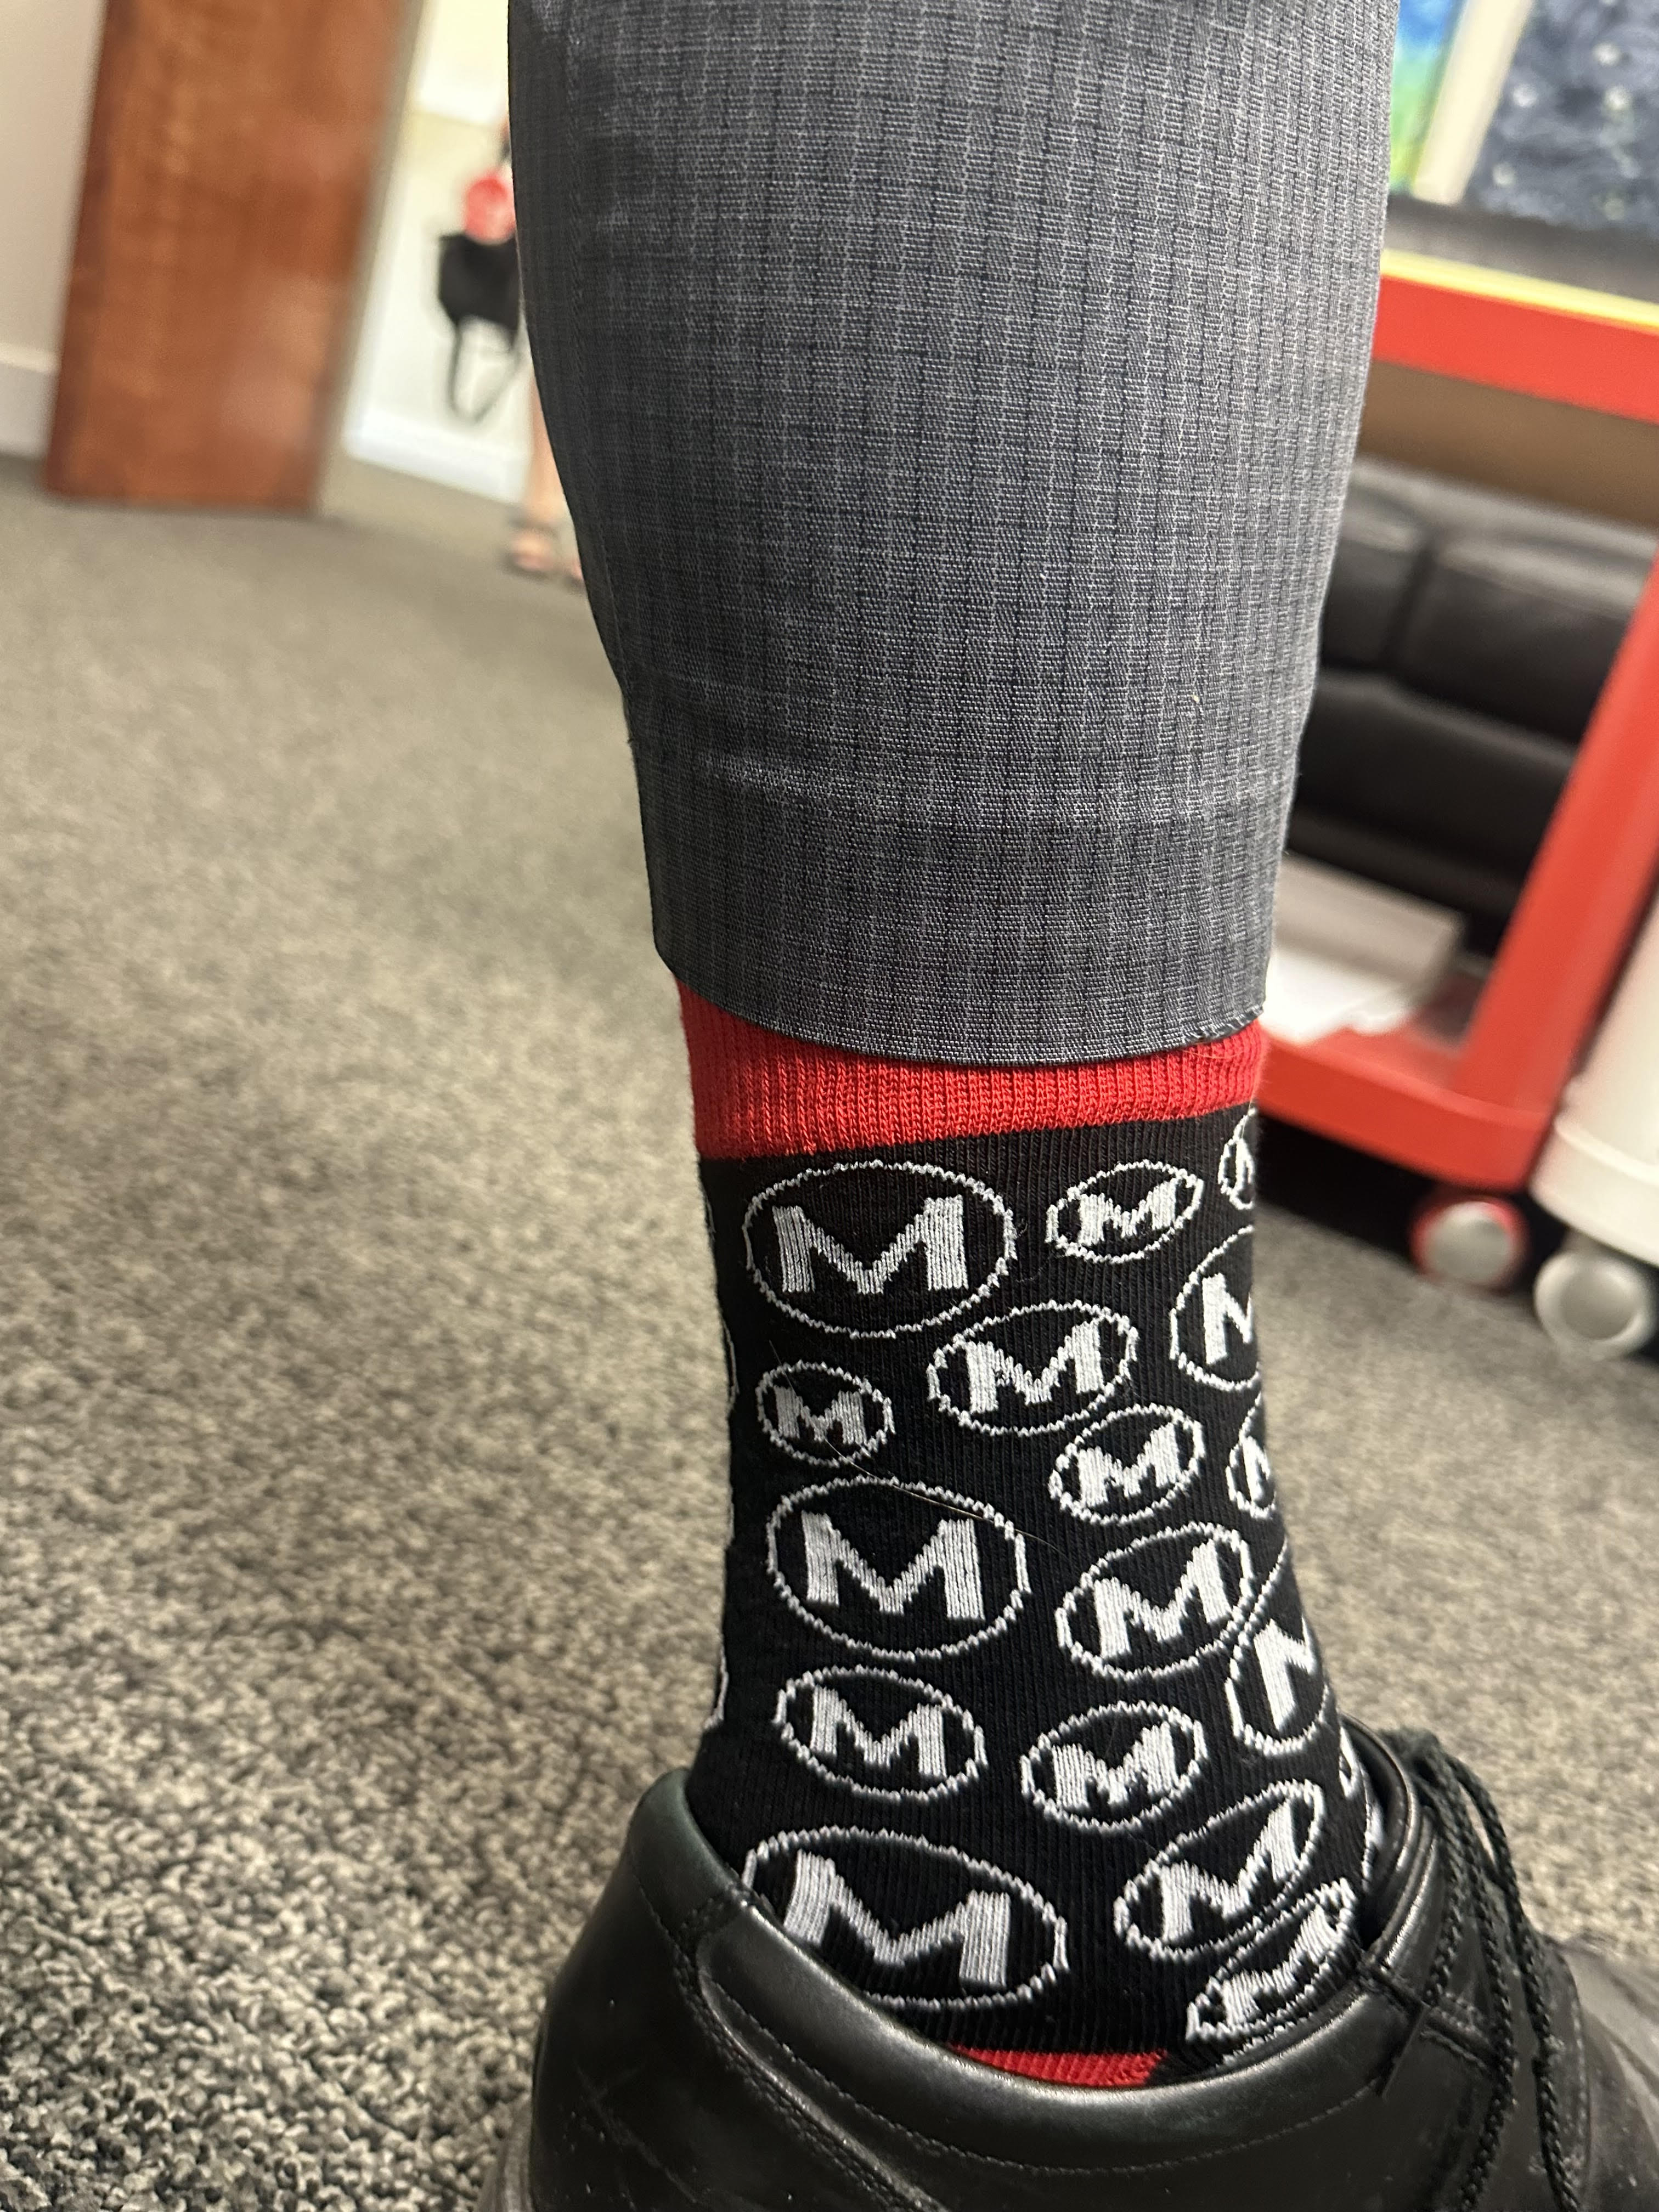 Matraex Socks - Office wear